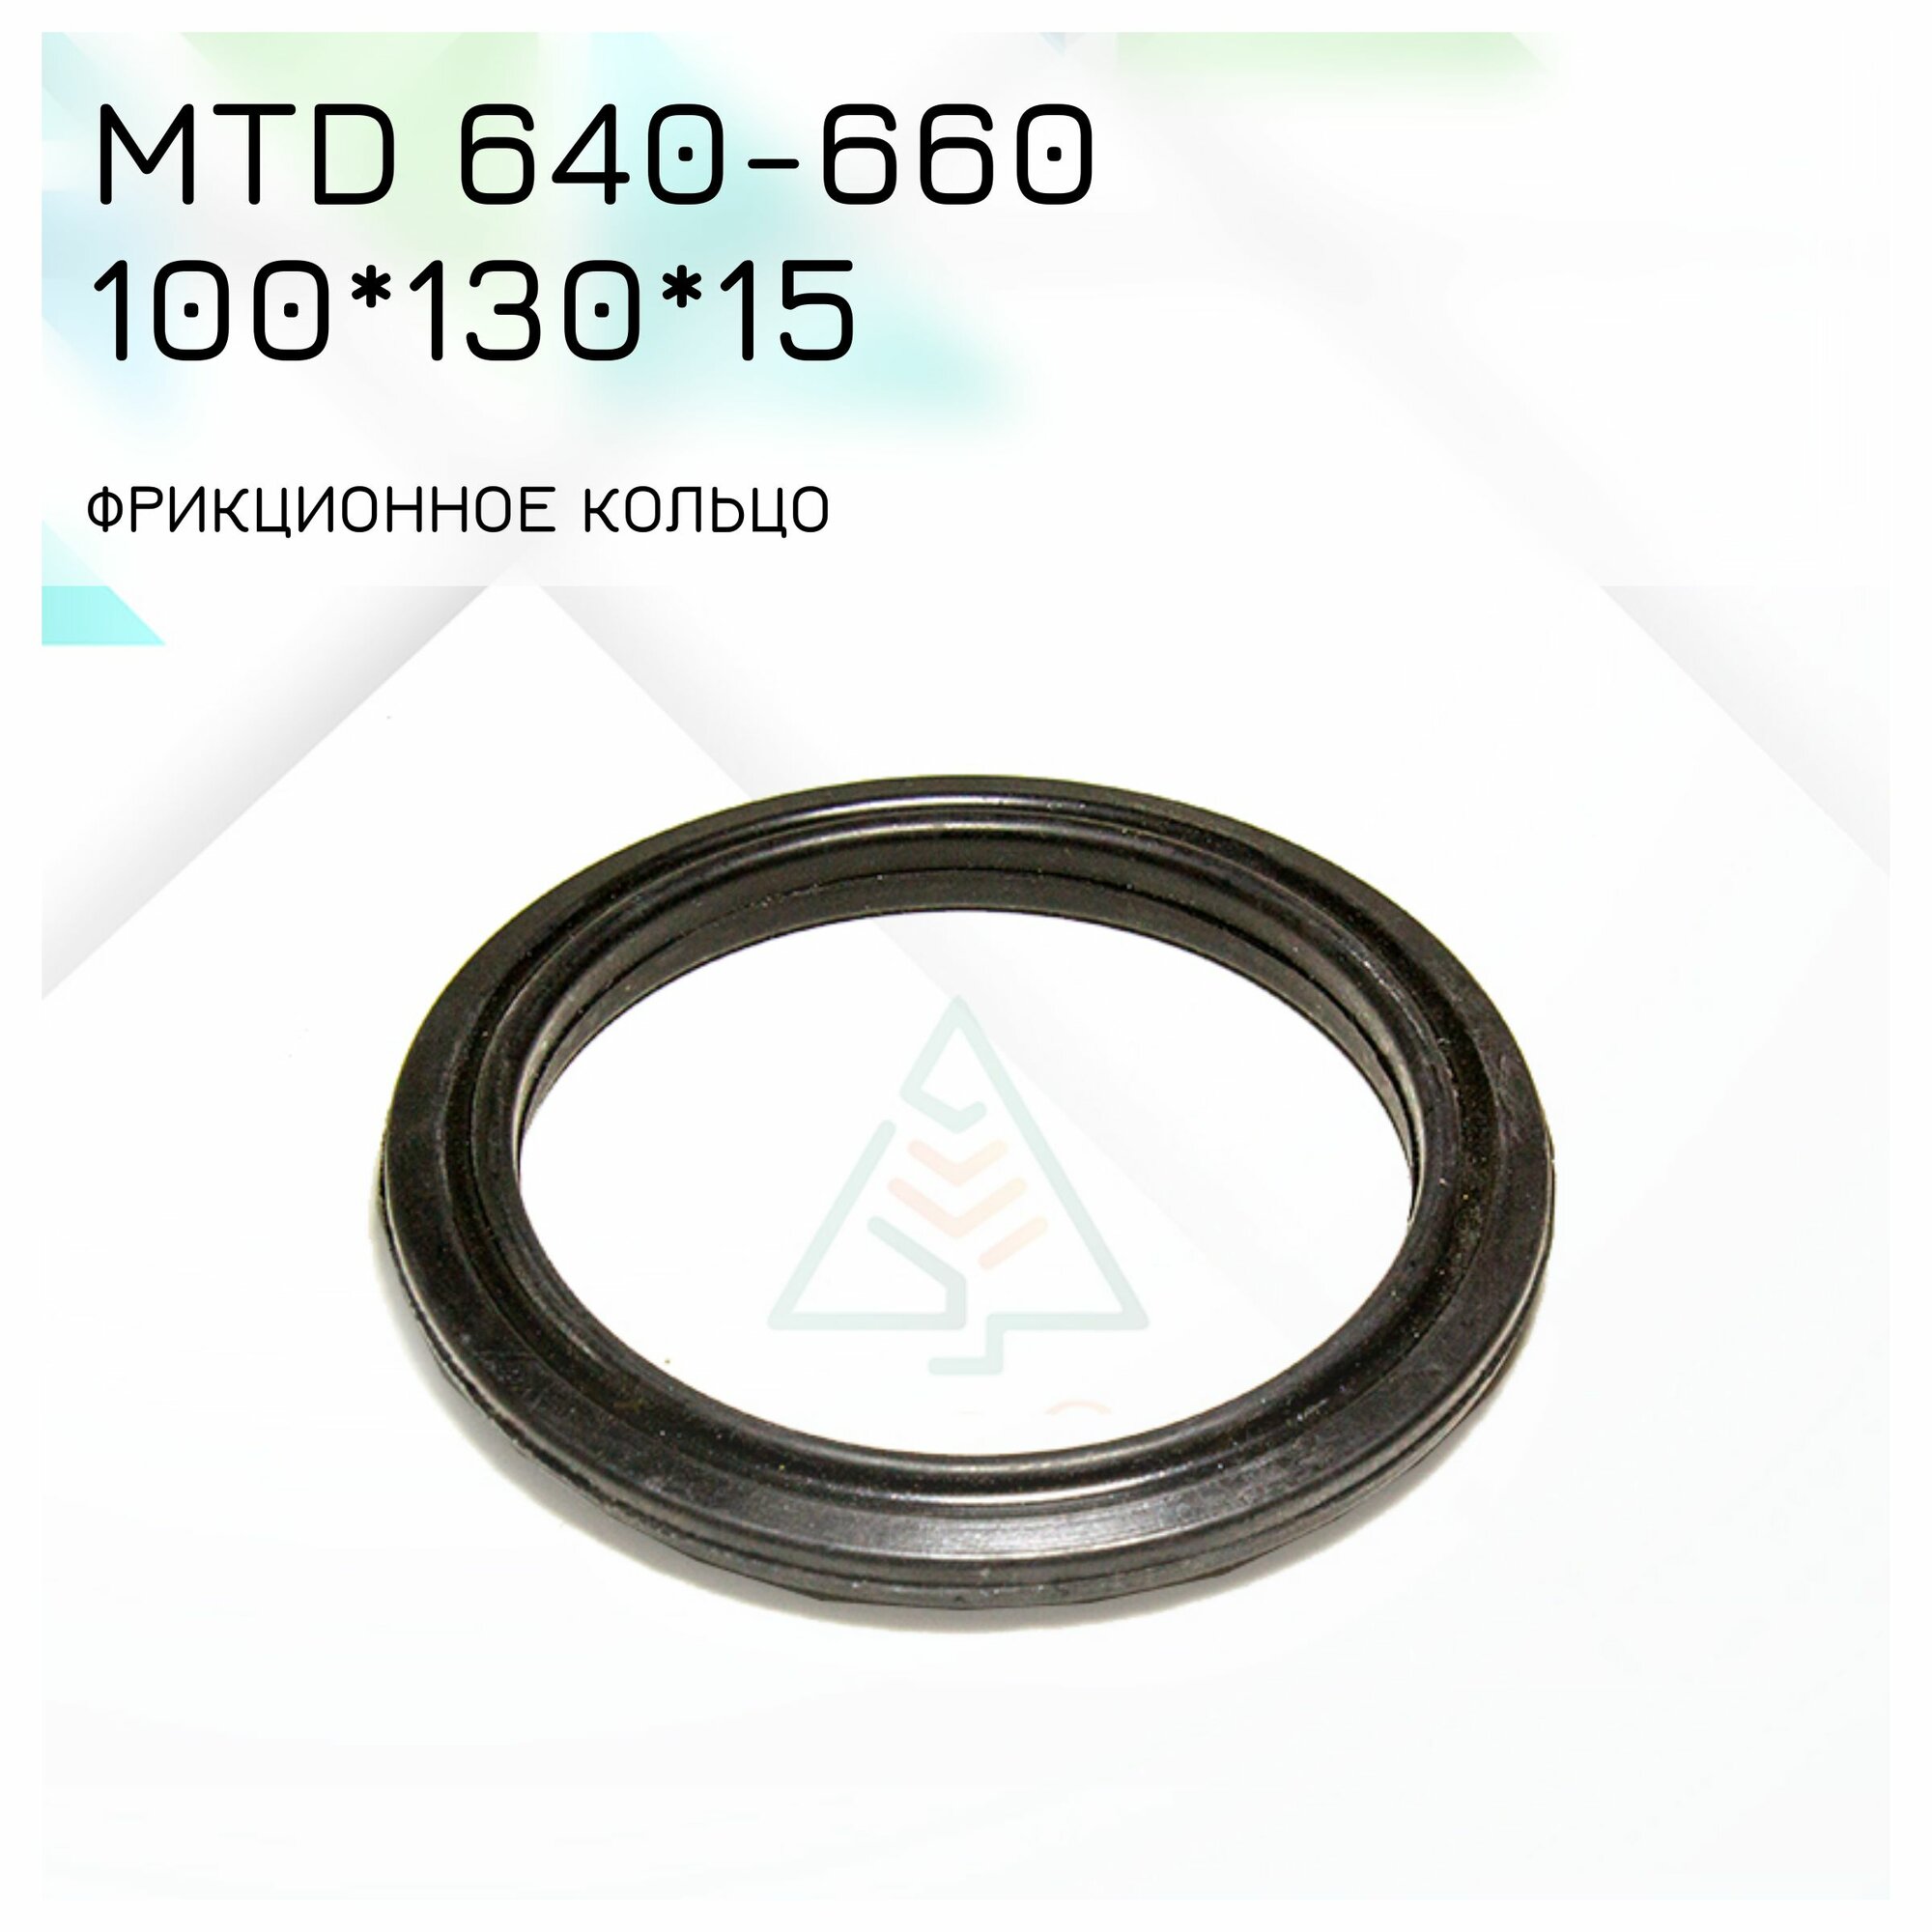 Фрикционное кольцо 100*130*15 для снегоуборщика MTD 640-660